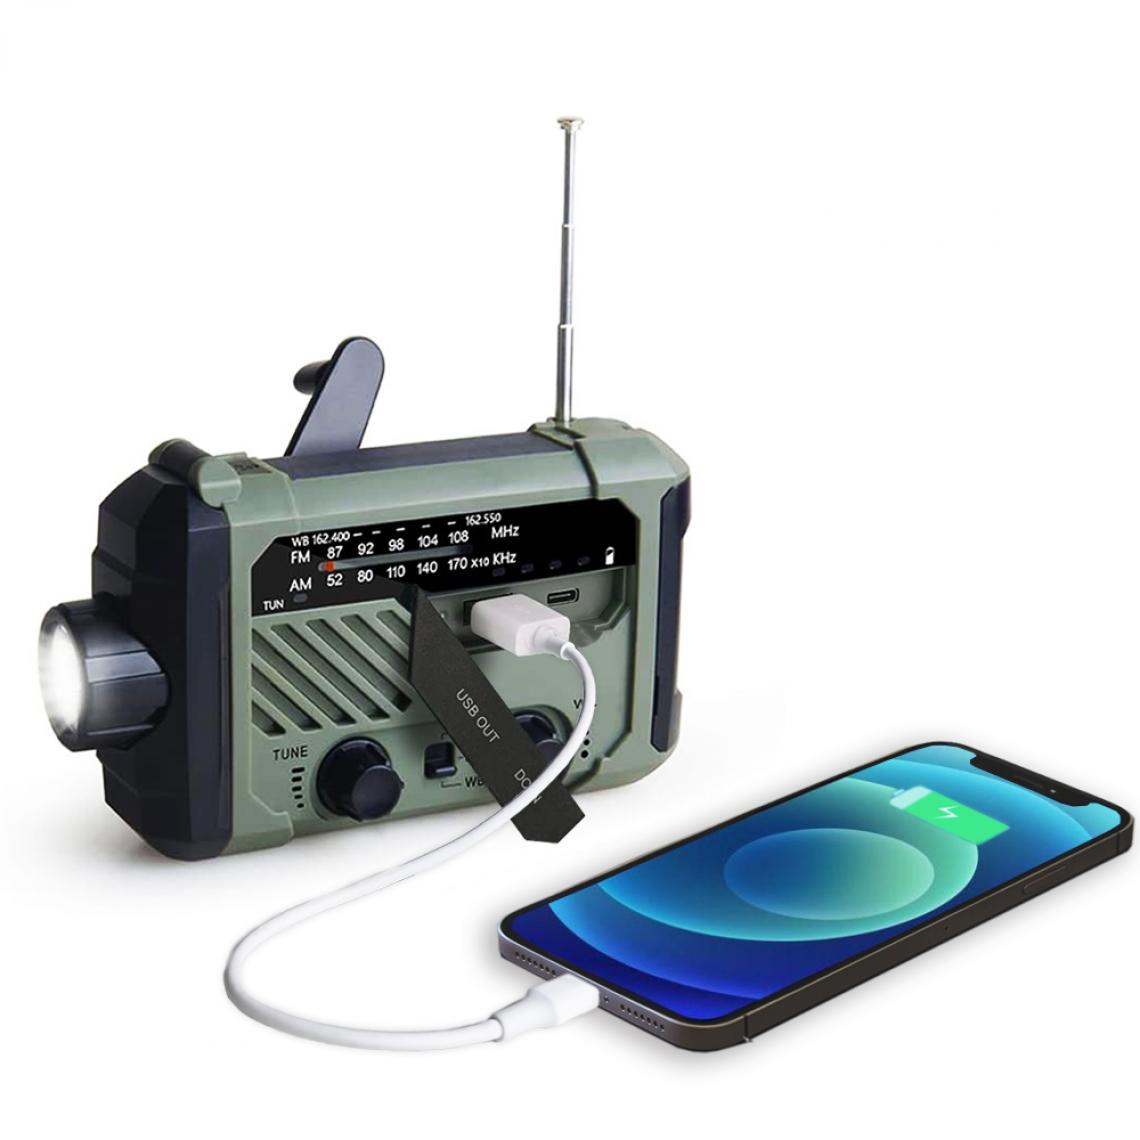 Universal - Radio portable manivelle AM FM NOAA urgence 3 dans 1 lampe de lecture lampe de poche solaire recharge 2000mAh alimentation banque pour téléphone mobile |(Vert) - Radio